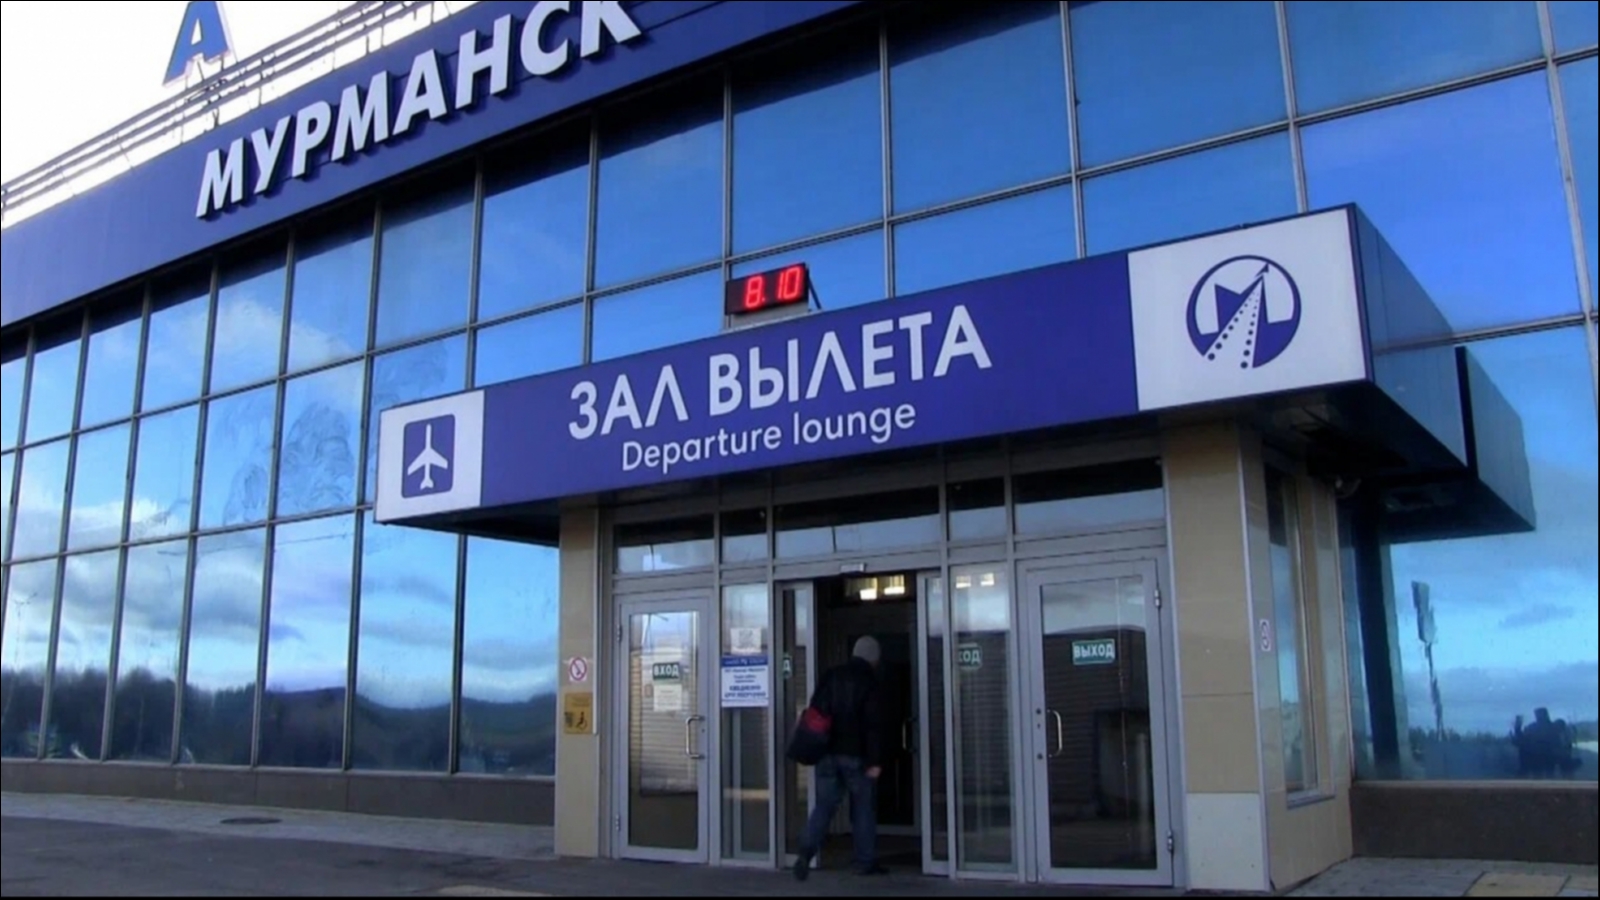 Мурманск входит в число самых хулиганских аэропортов России